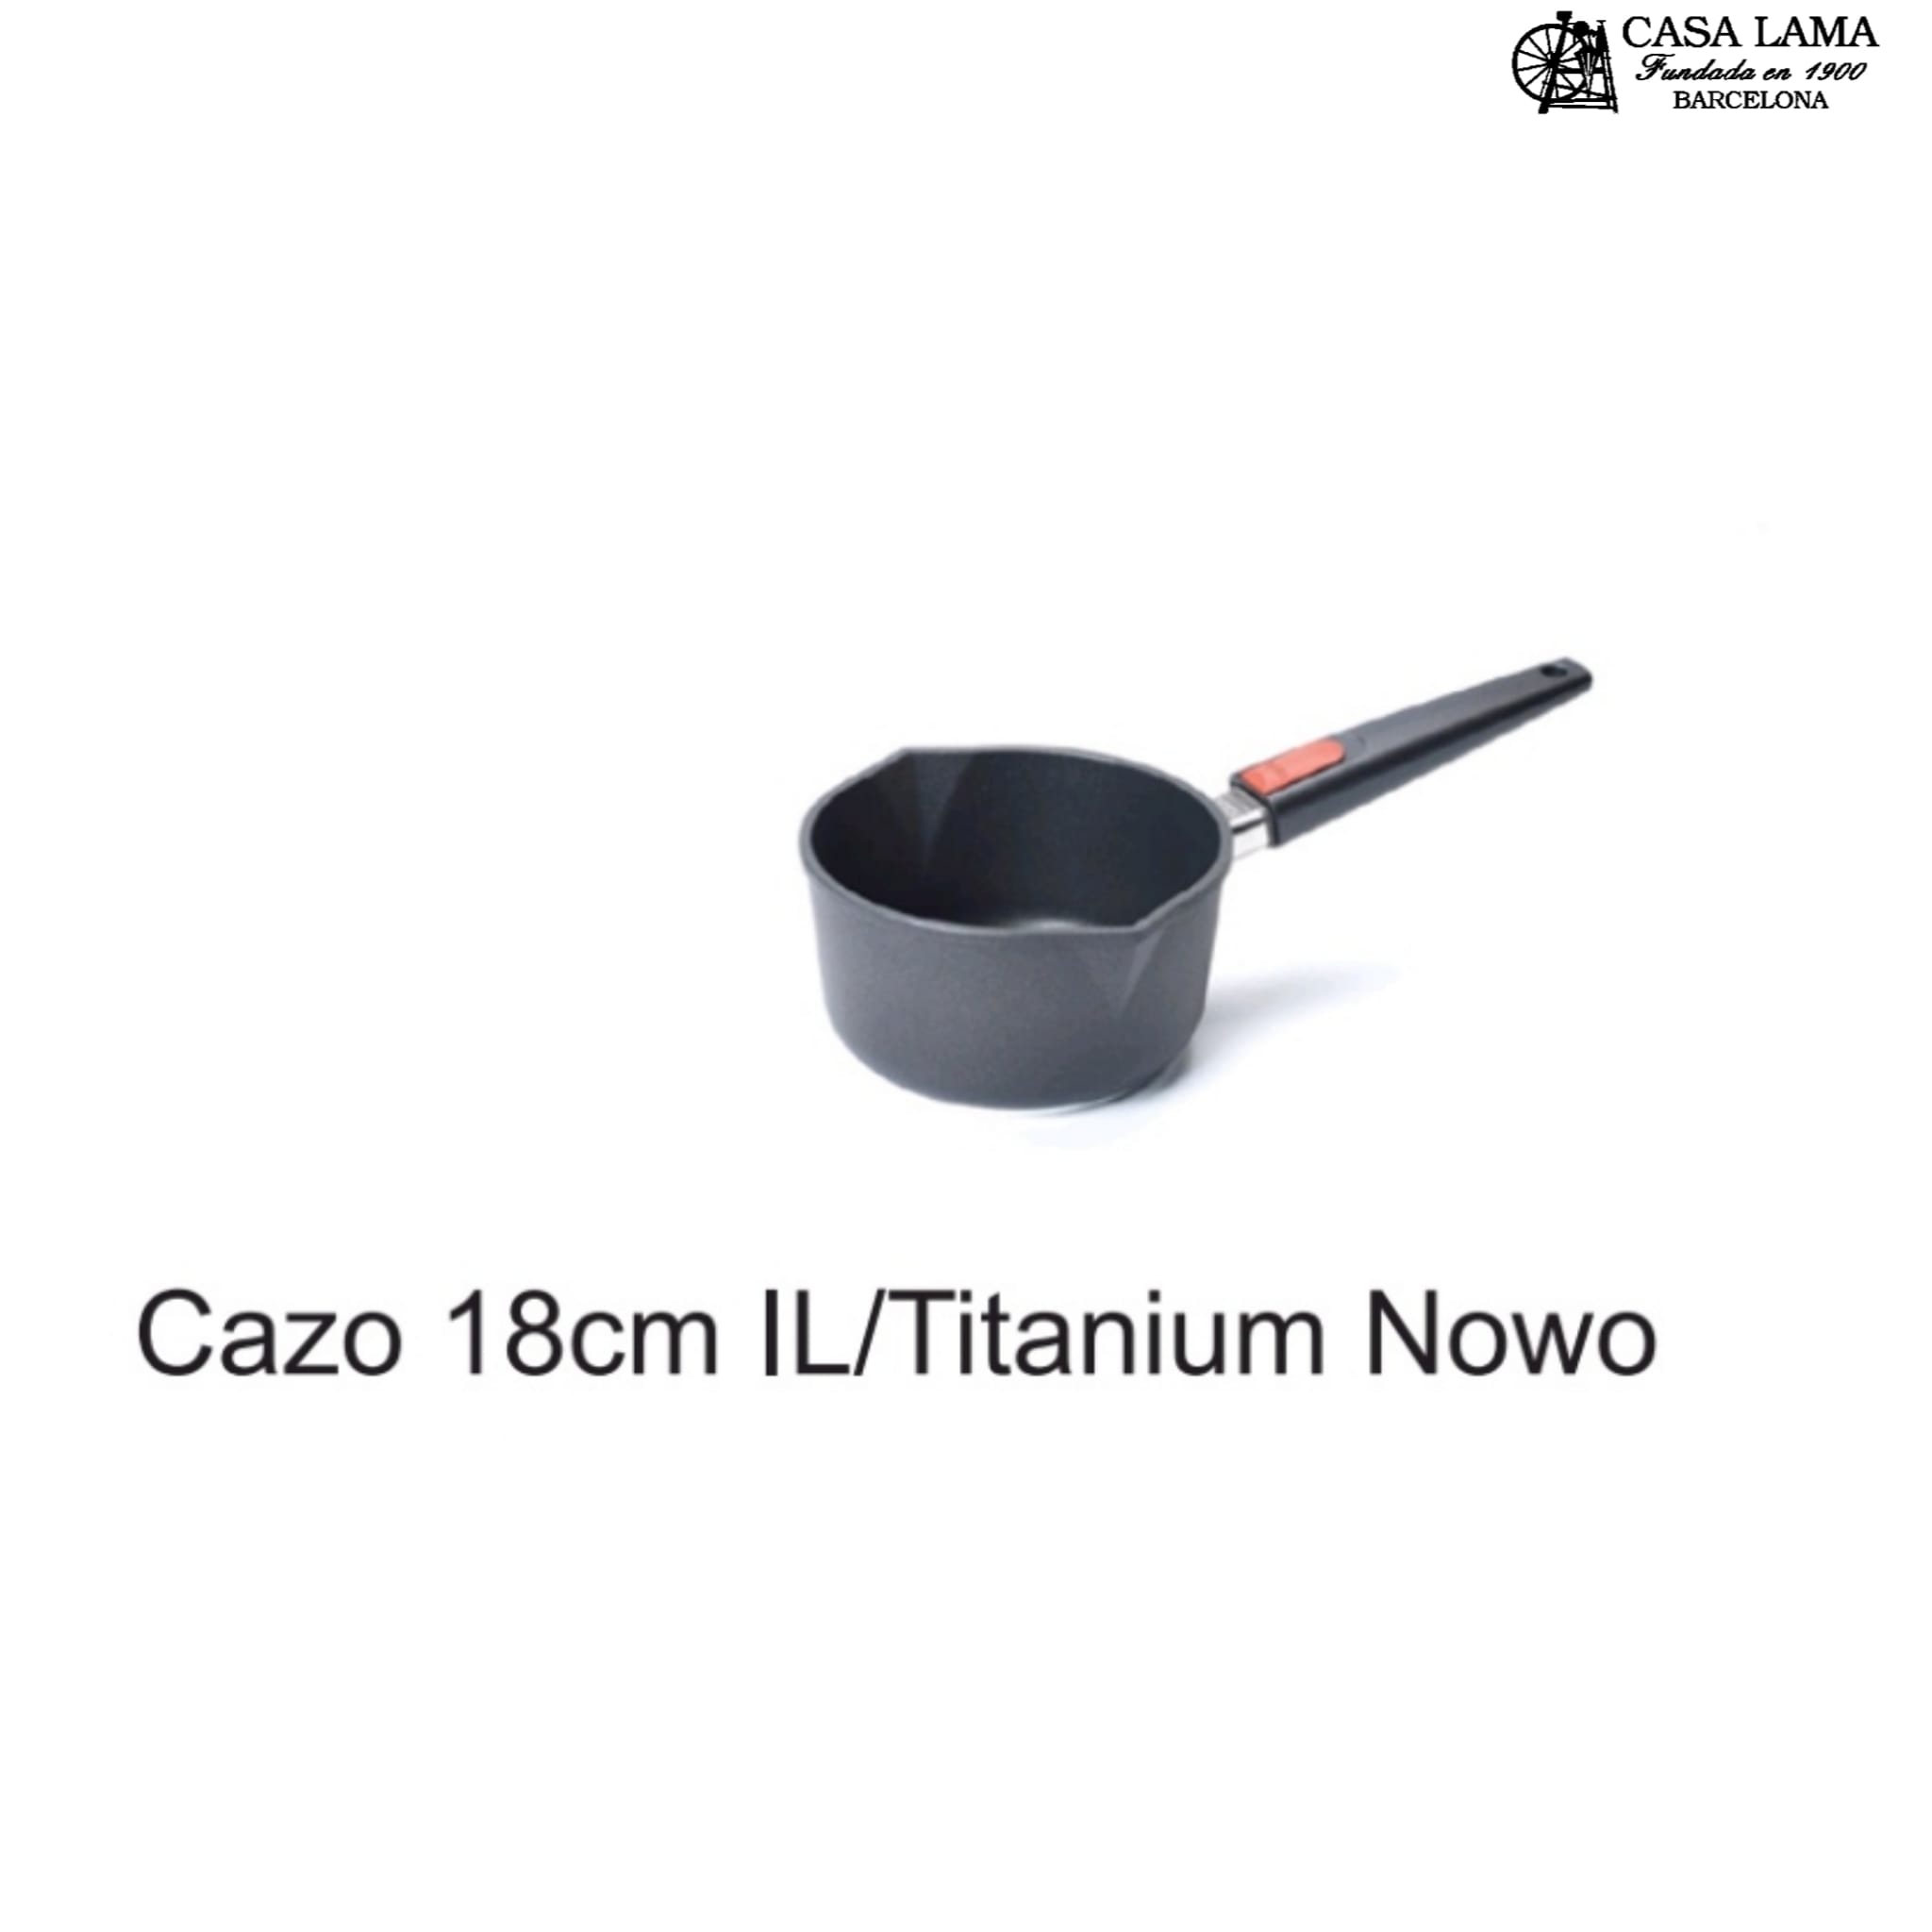 Cazo 18cm Woll Inducción/Line Titanium Nowo - Casa Lama